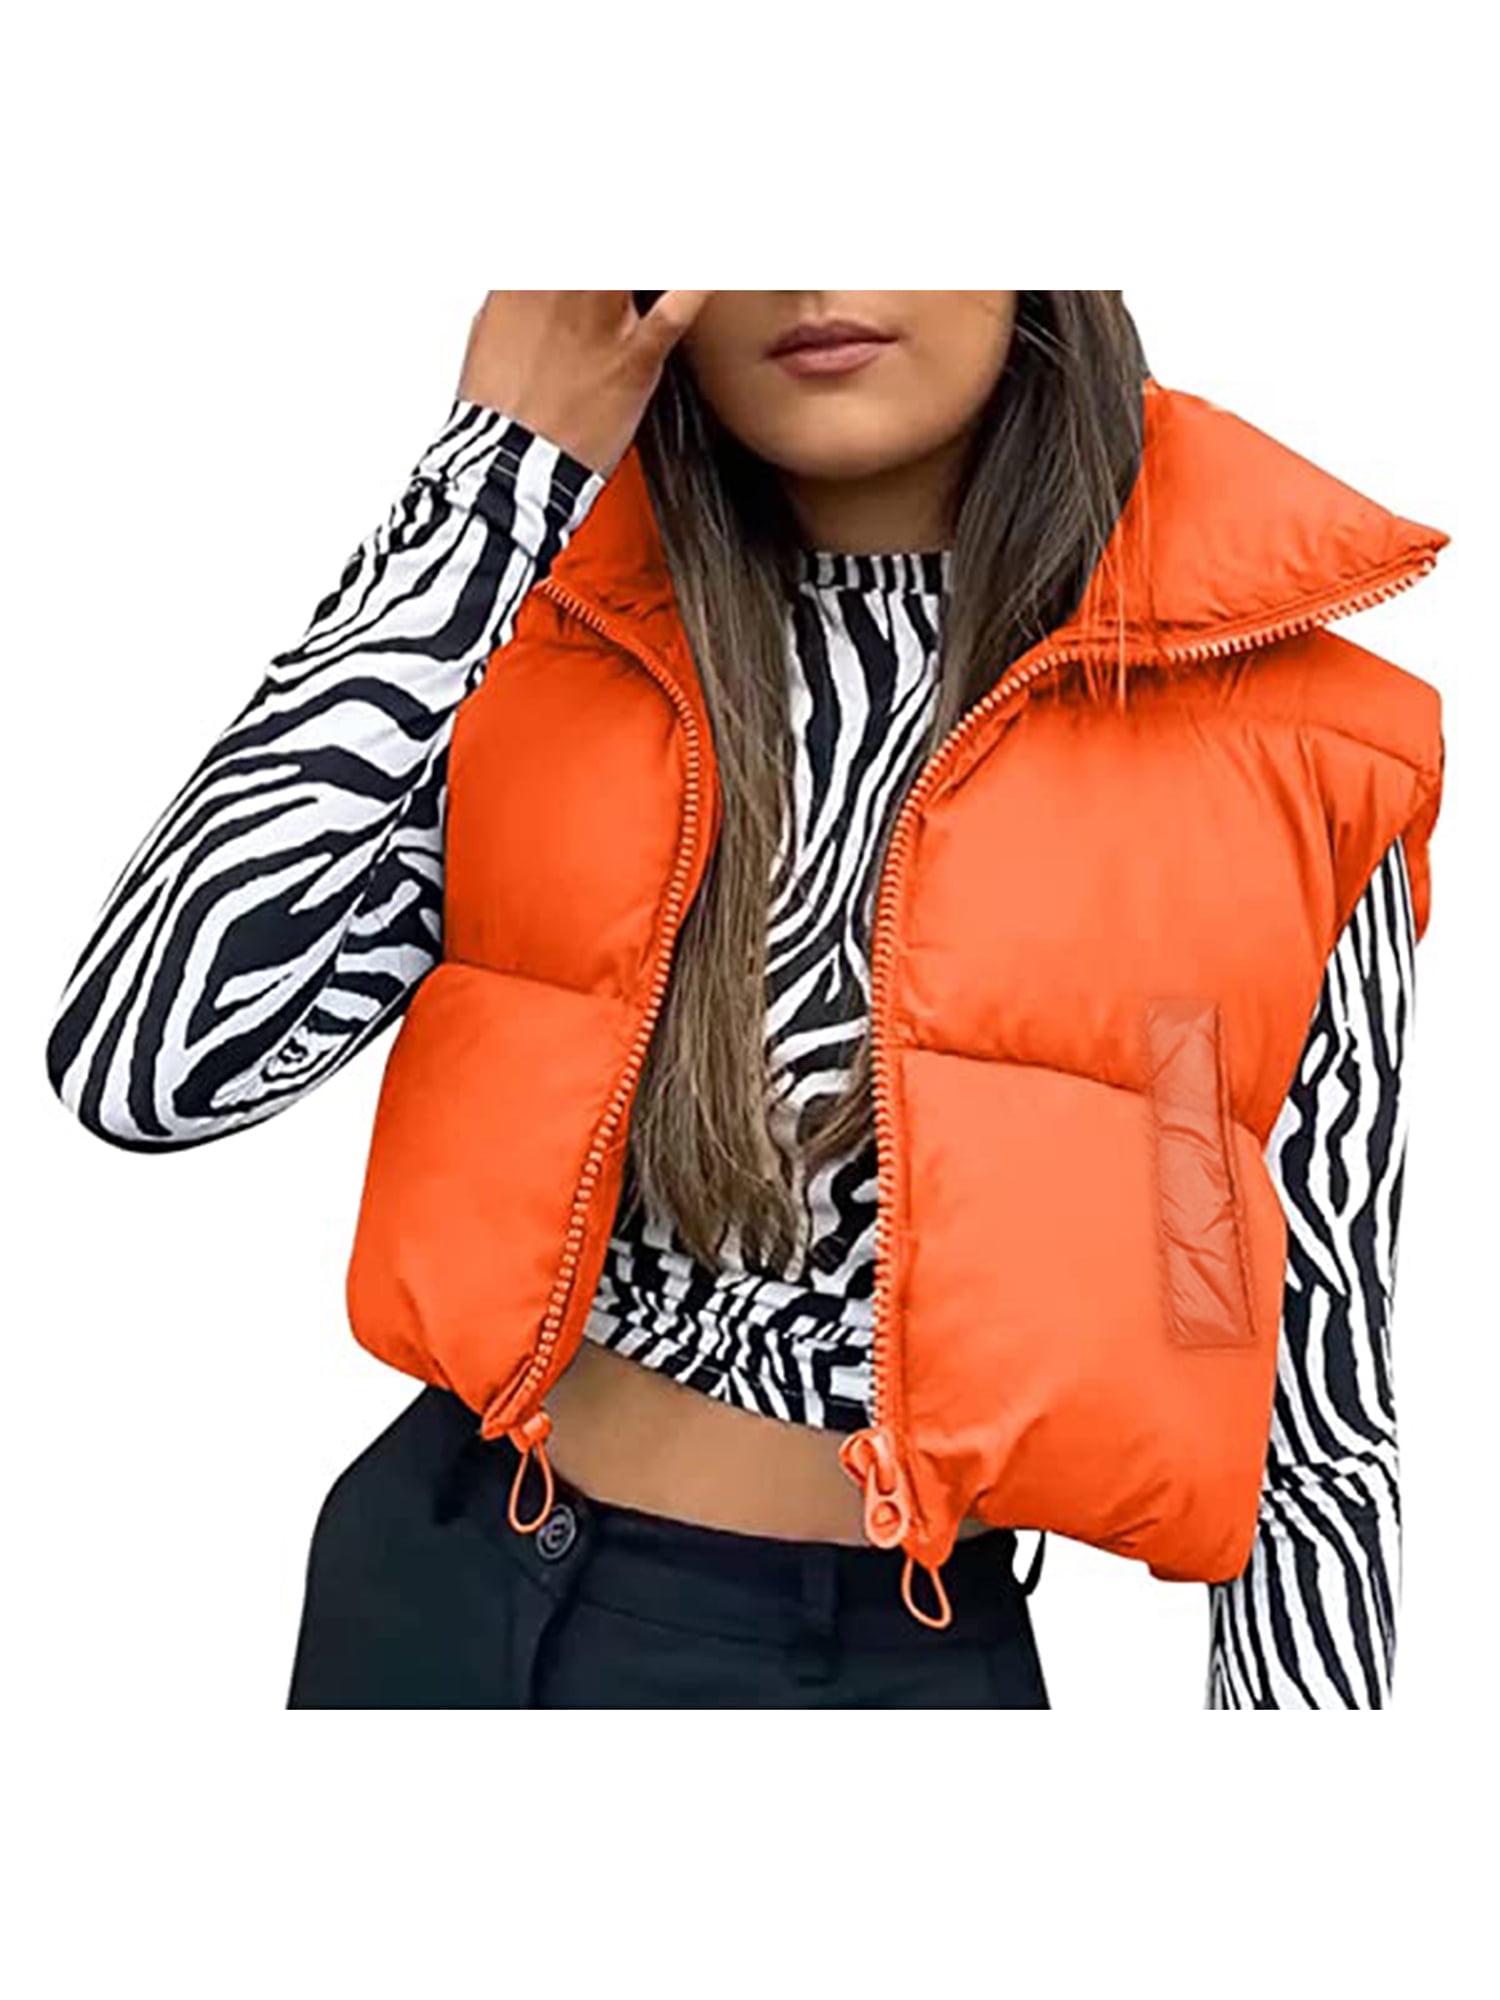 Women's Winter Warm Crop Vest Zipper Up Lightweight Sleeveless ...